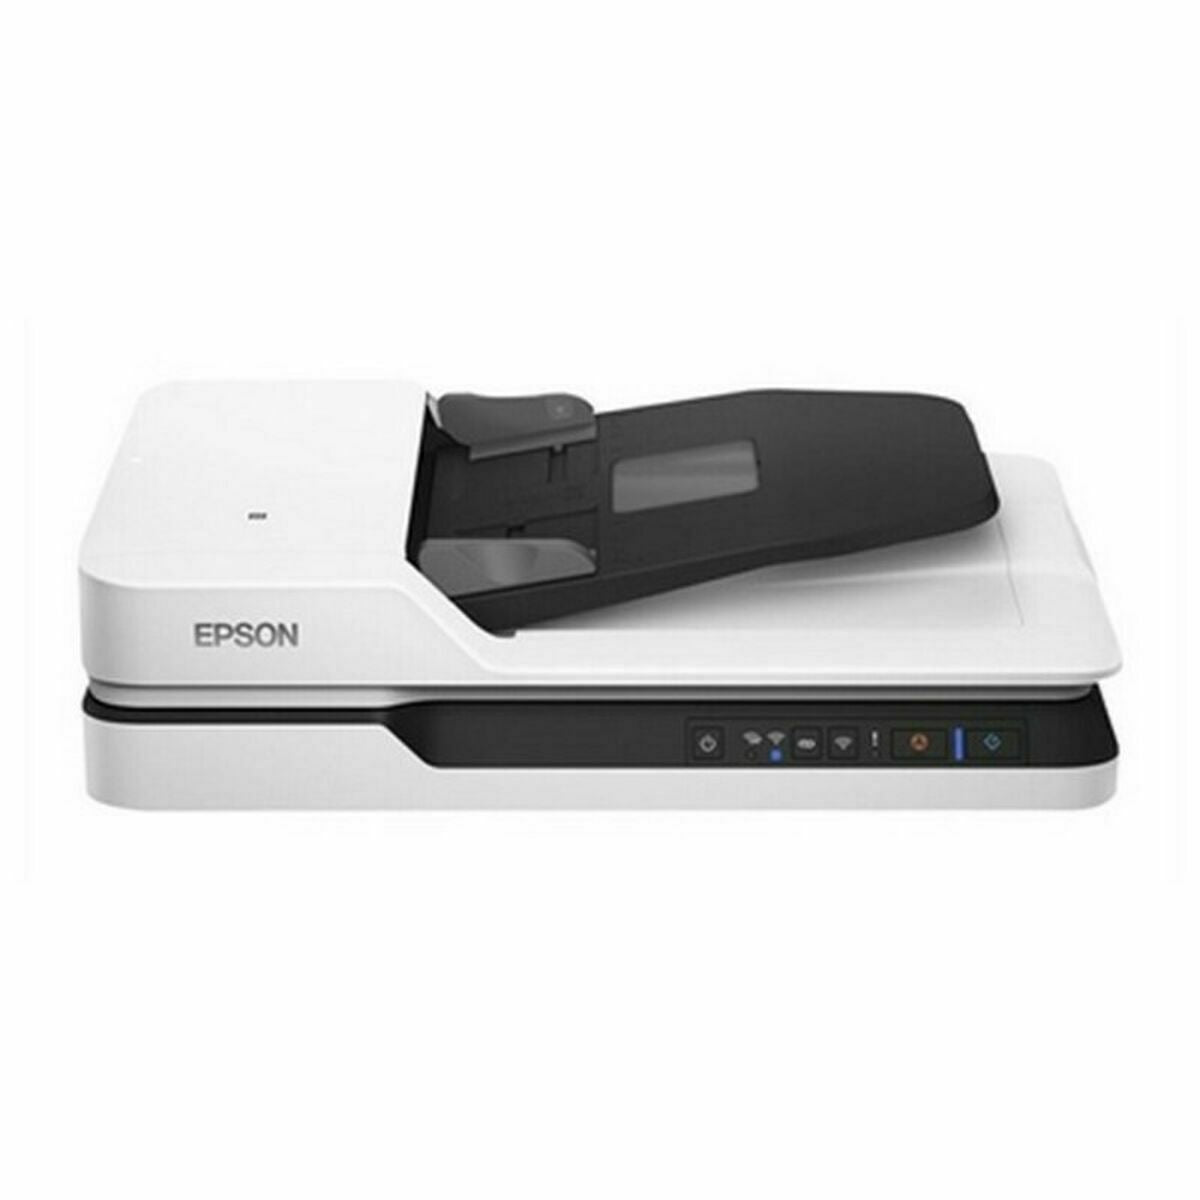 Двухсторонний сканер с Wifi Epson B11B244401 25 ppm